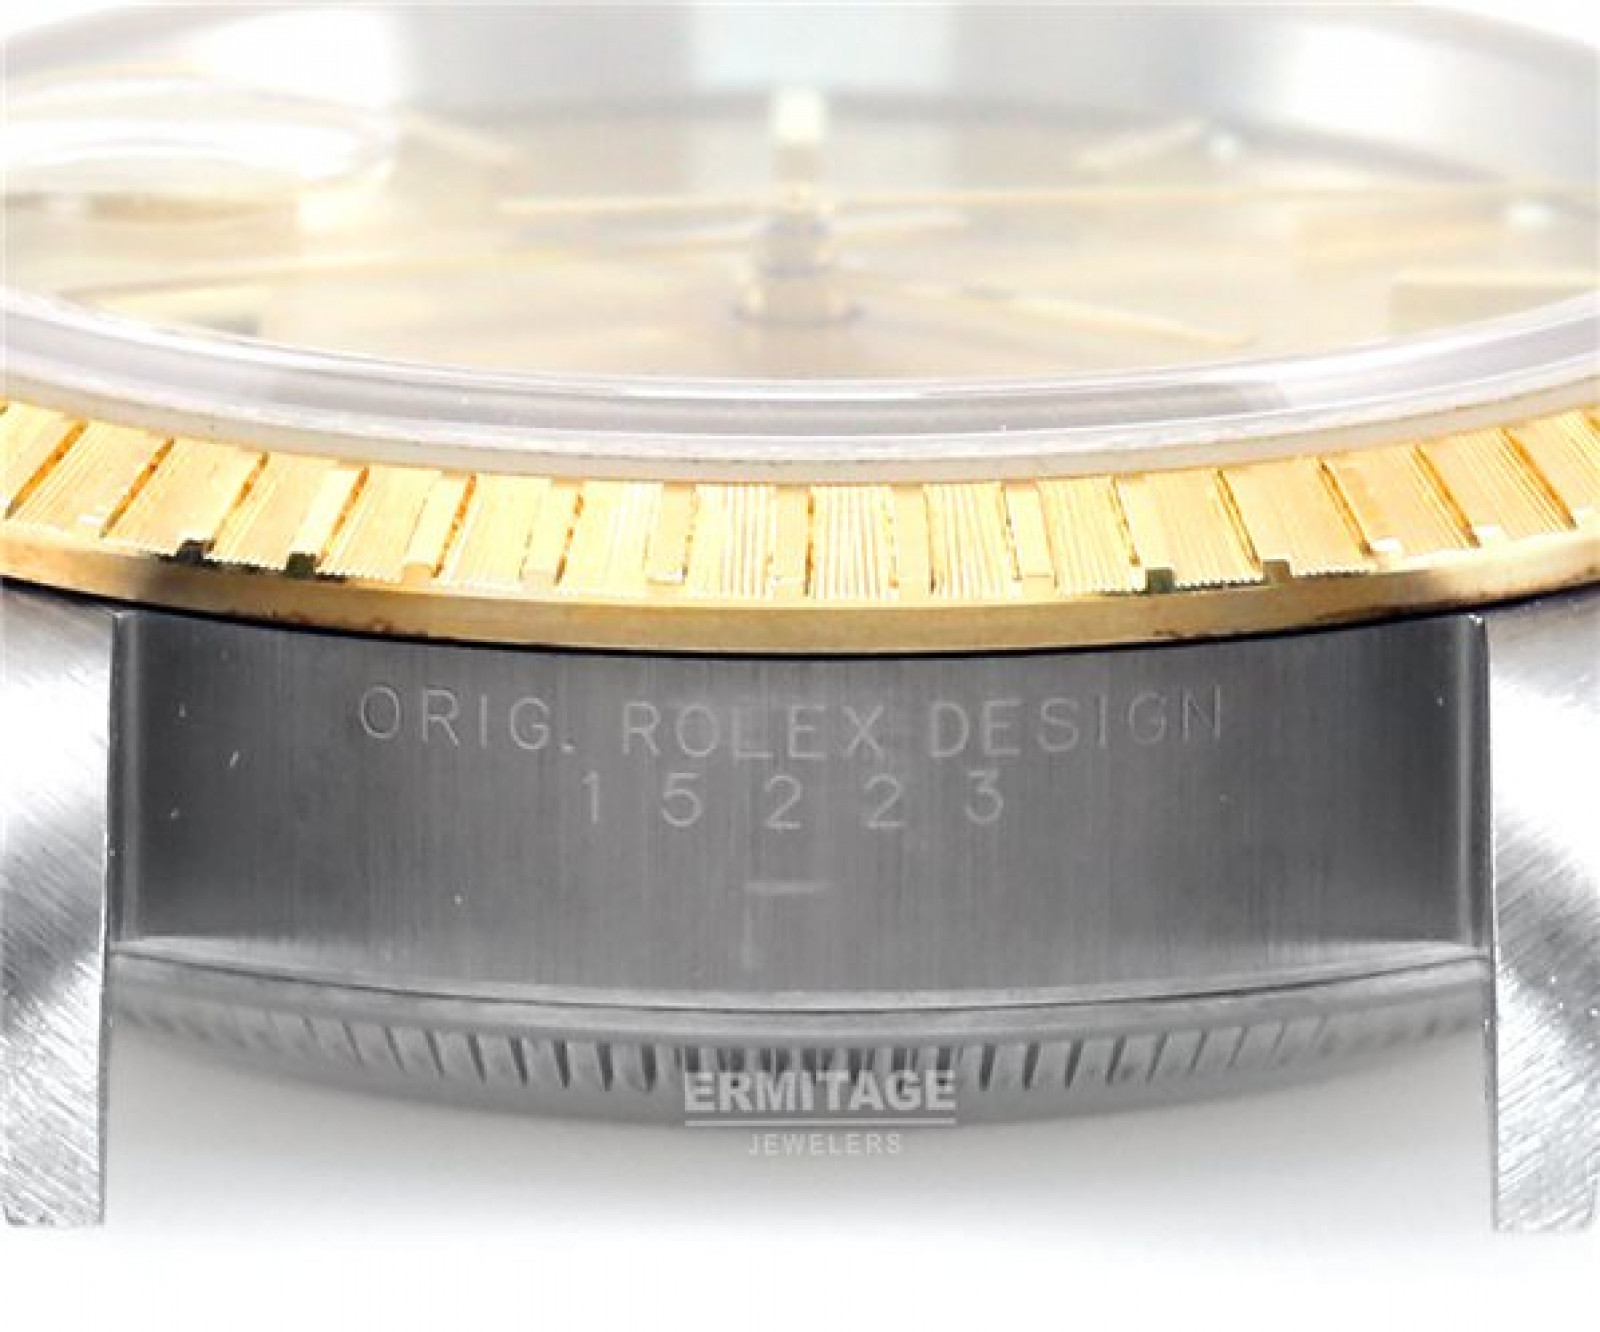 Rolex Date 15223 Gold & Steel Year 2003